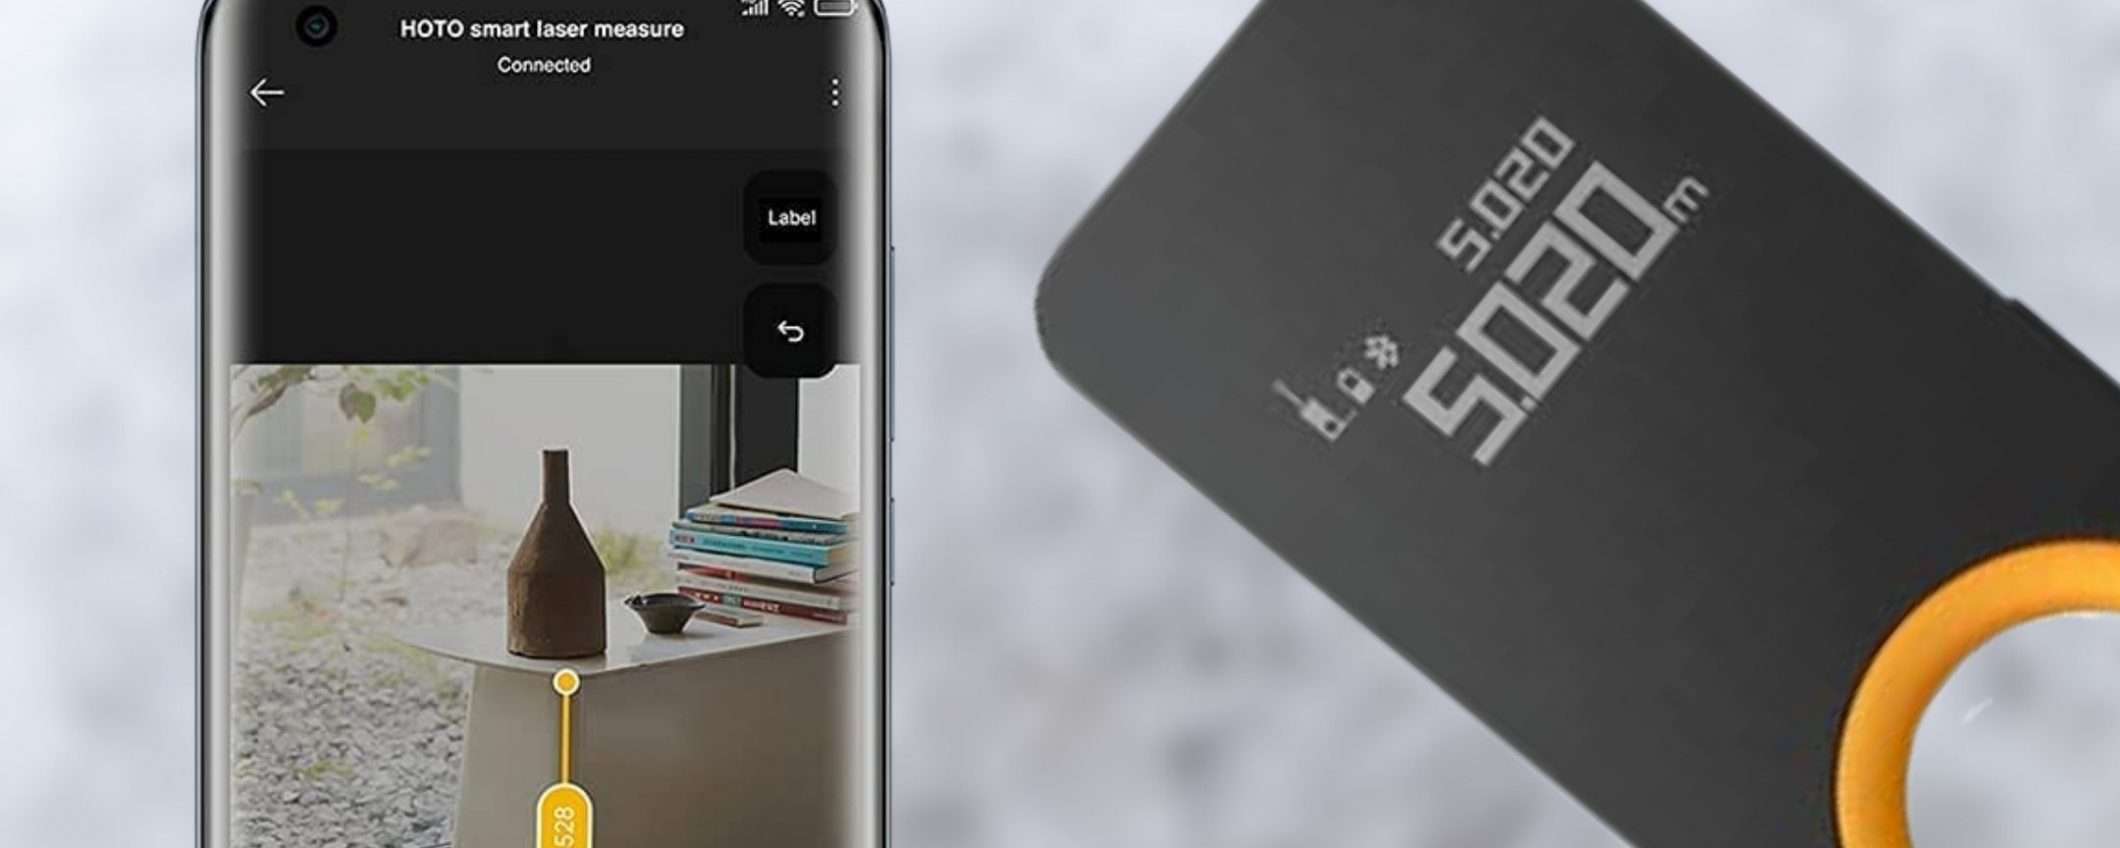 Xiaomi: il telemetro laser smart è una GENIALATA (30€)